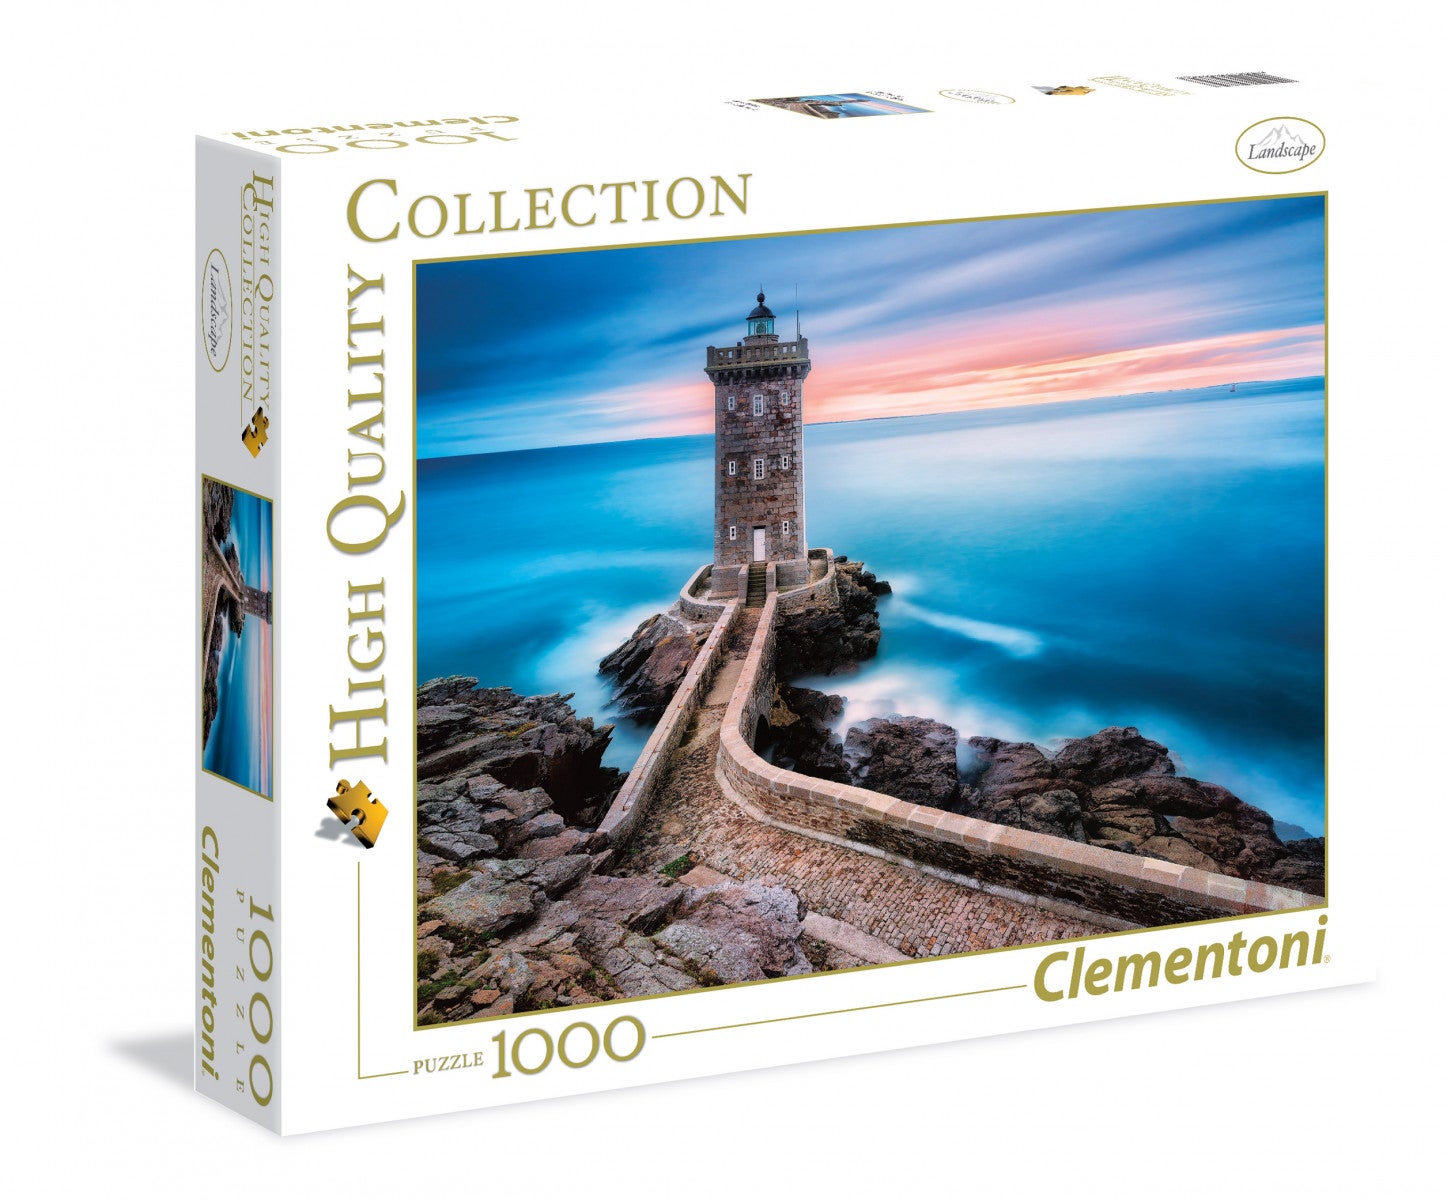 Bilde av Puslespill 1000 The Lighthouse Clementoni